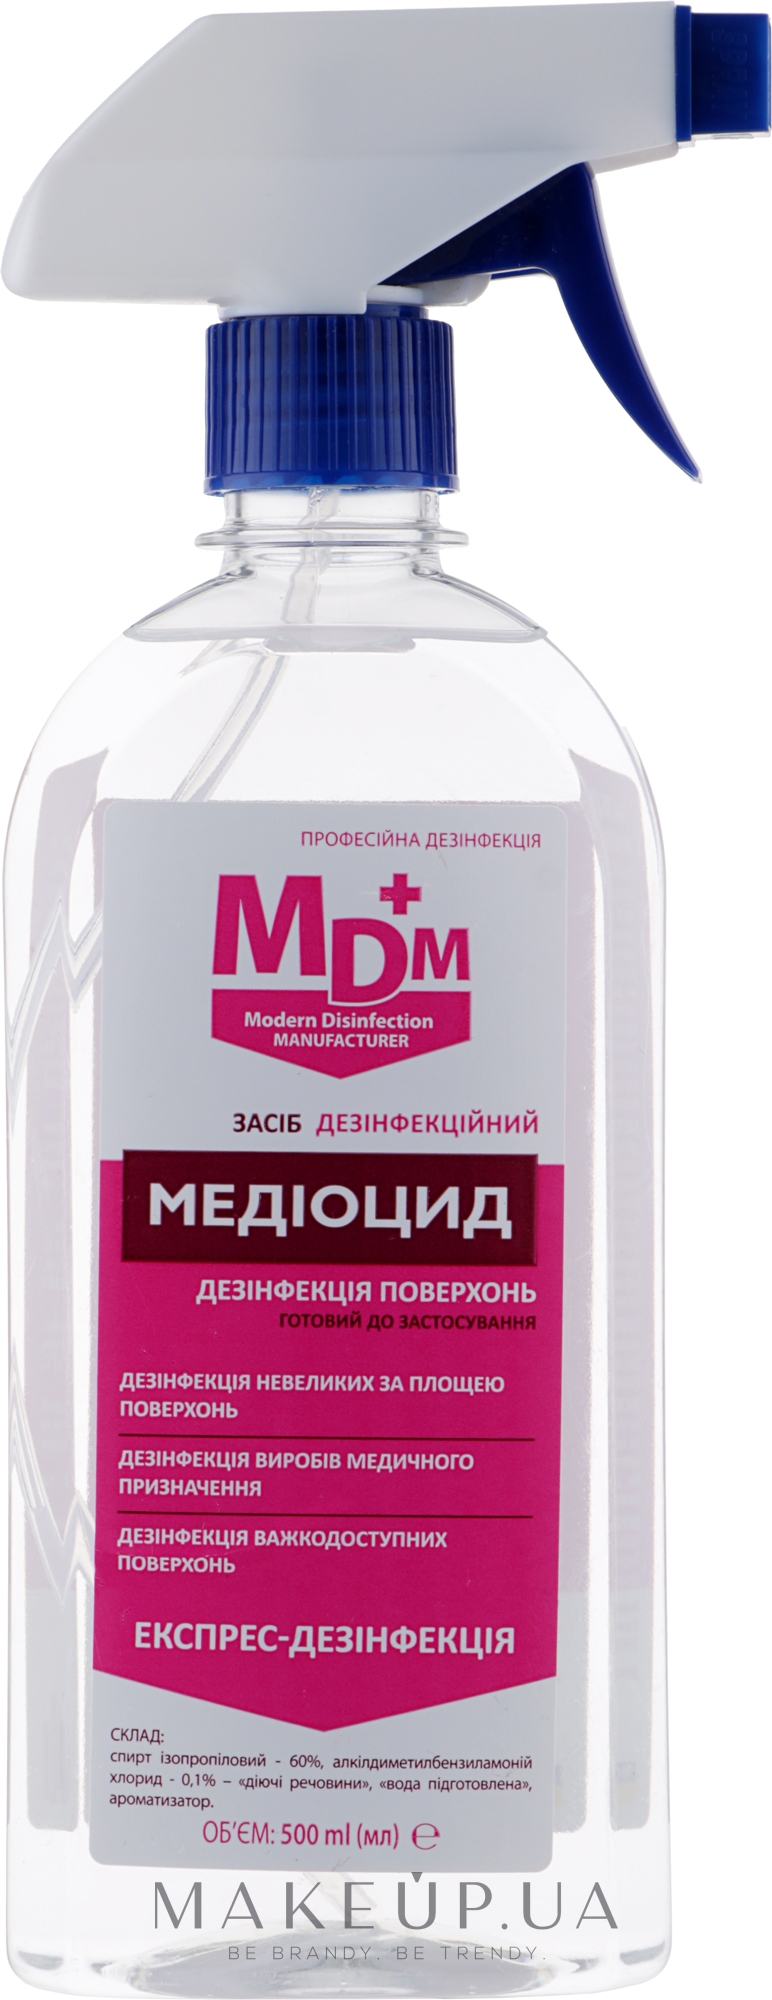 Антисептик для быстрой дезинфекции "Медиоцид" - MDM — фото 500ml